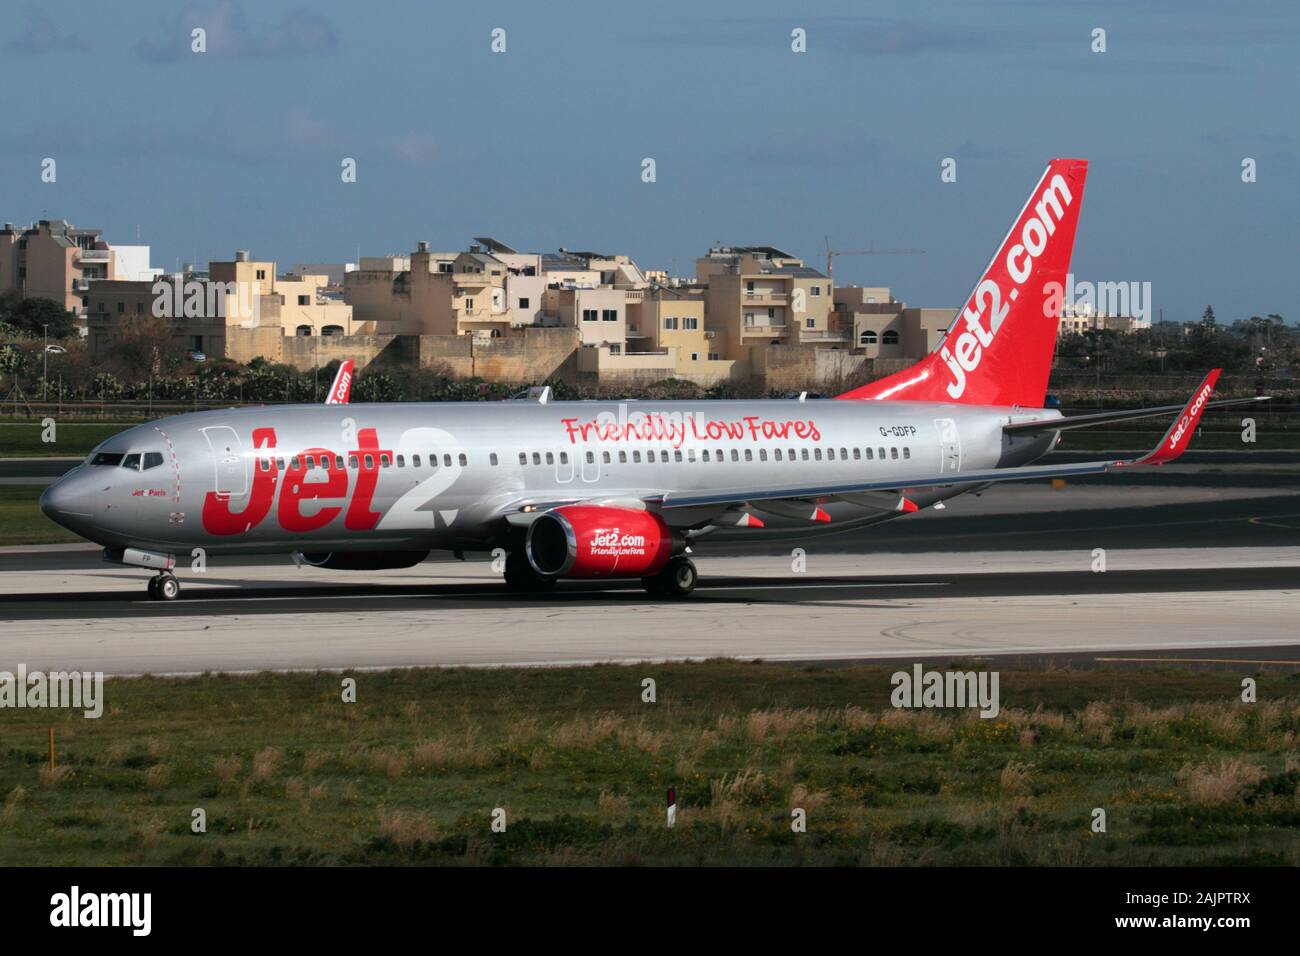 Boeing 737-800 passeggeri jet-plane appartenente alla compagnia aerea britannica a basso costo Jet2 in pista durante il decollo da Malta. Voli economici. Foto Stock